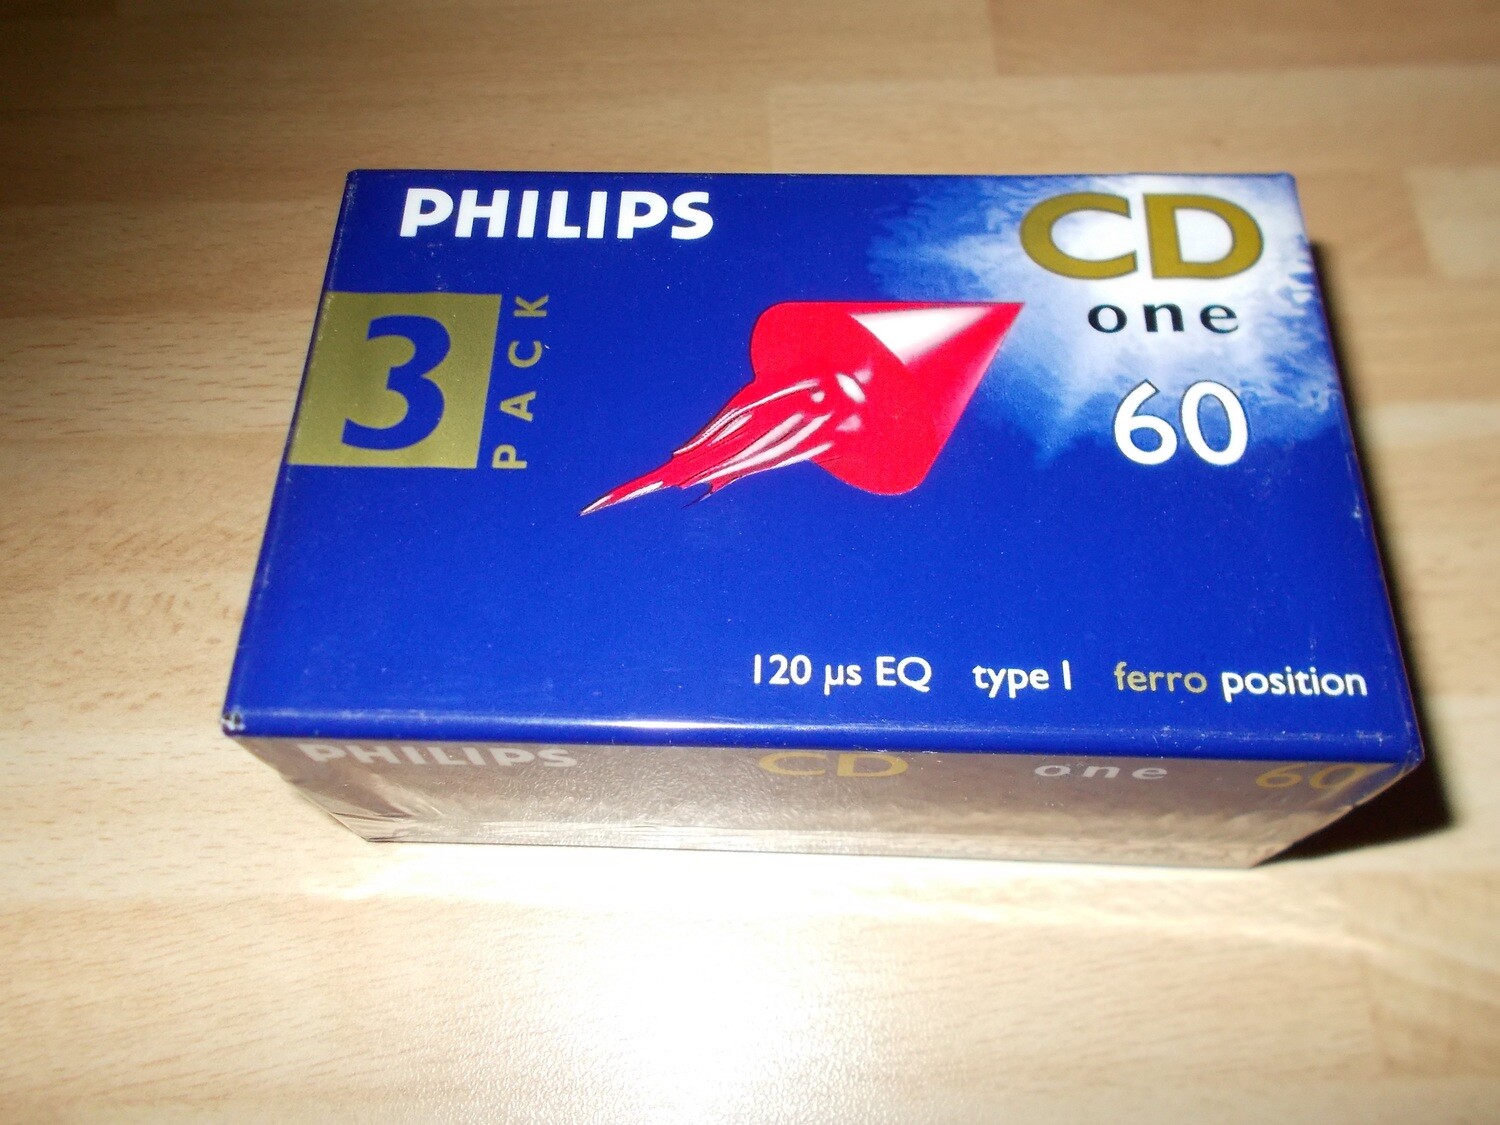 Philips CD One 60 3er Pack Kassette Tape in OVP